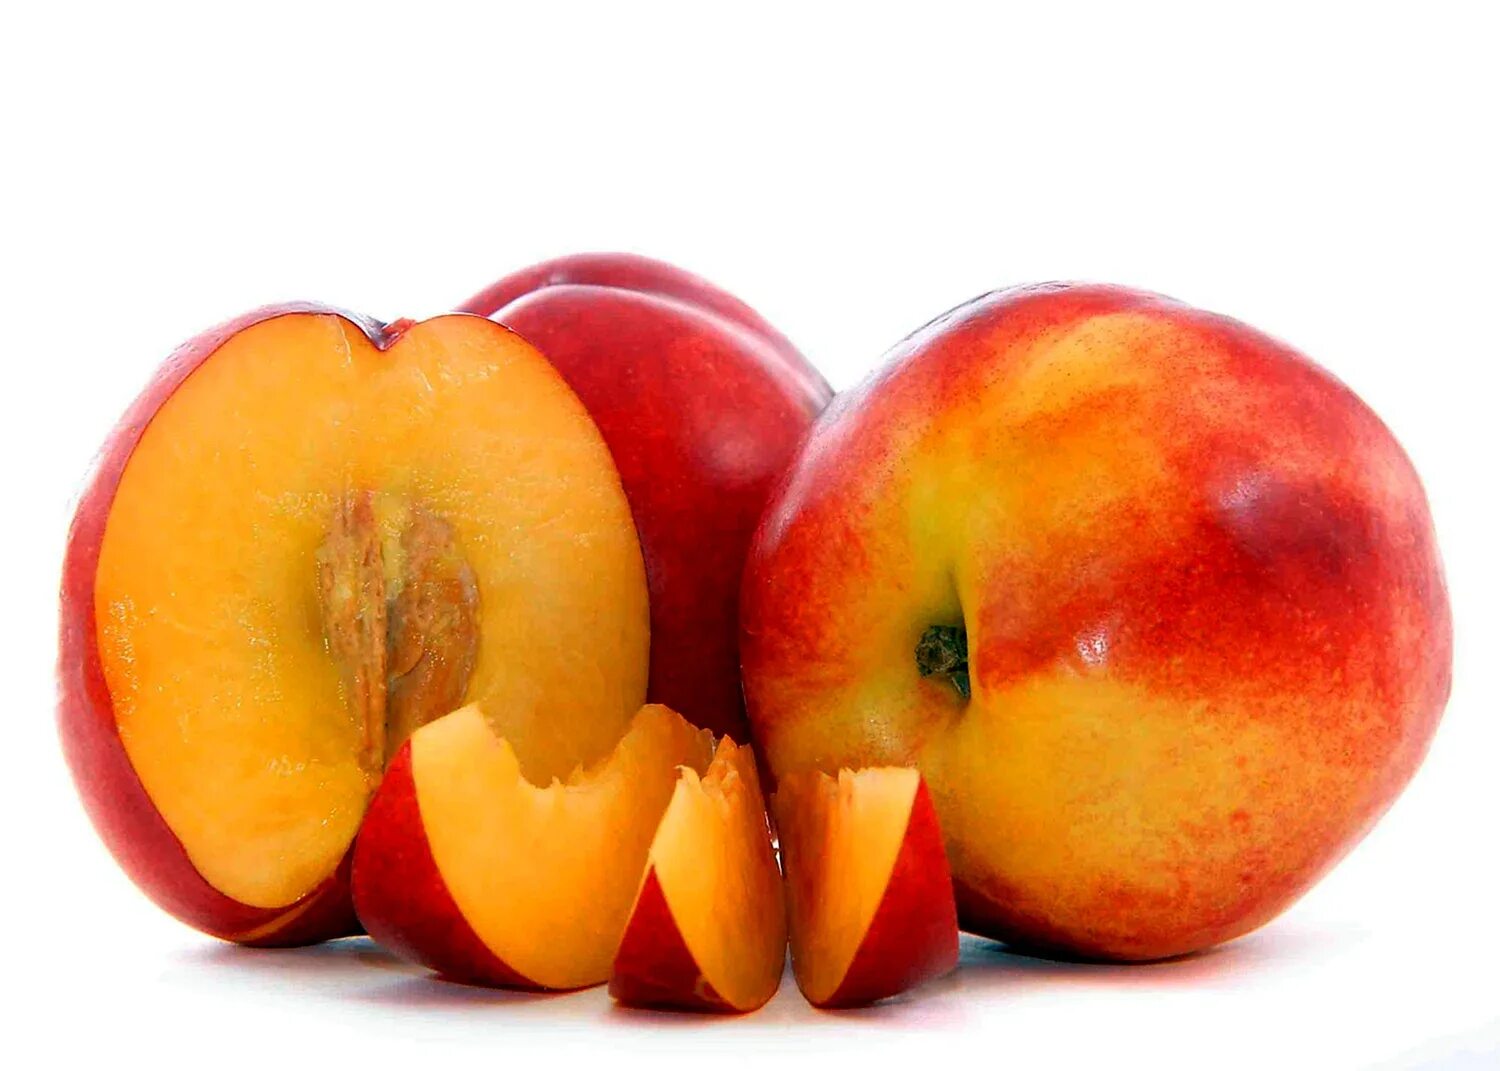 2 10 всех фруктов составляют персики. Персик, манго,абрикос,нектарин. Нектарин медовый беломясый.